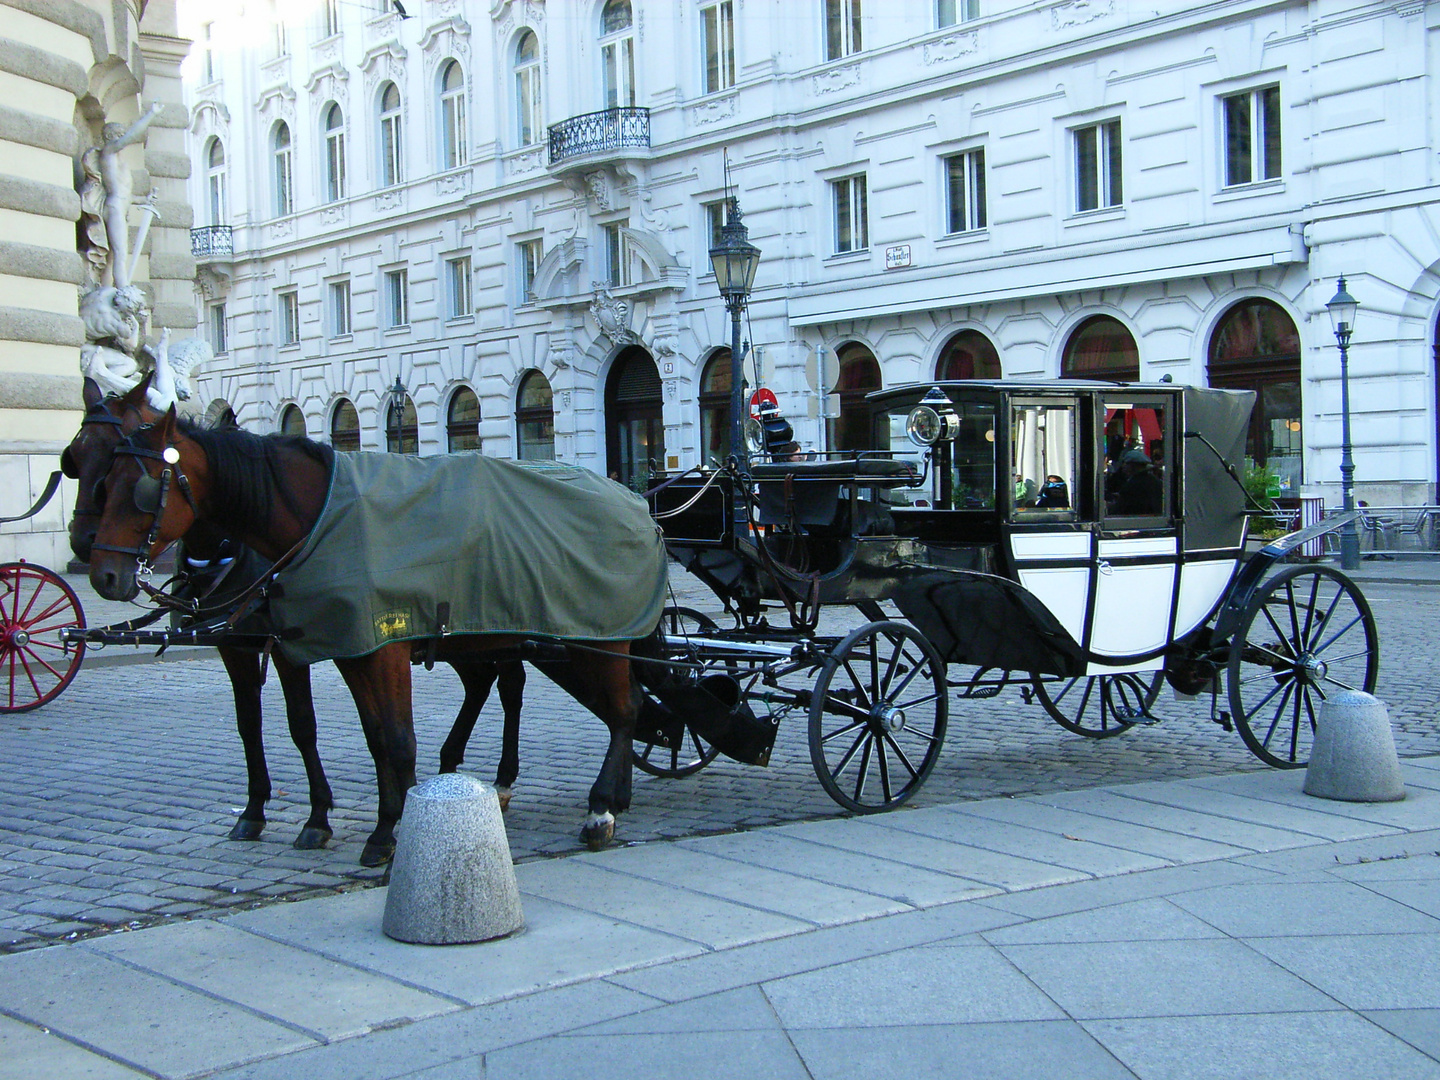 Doppelspännige Kutsche vor Hofburg, Wien